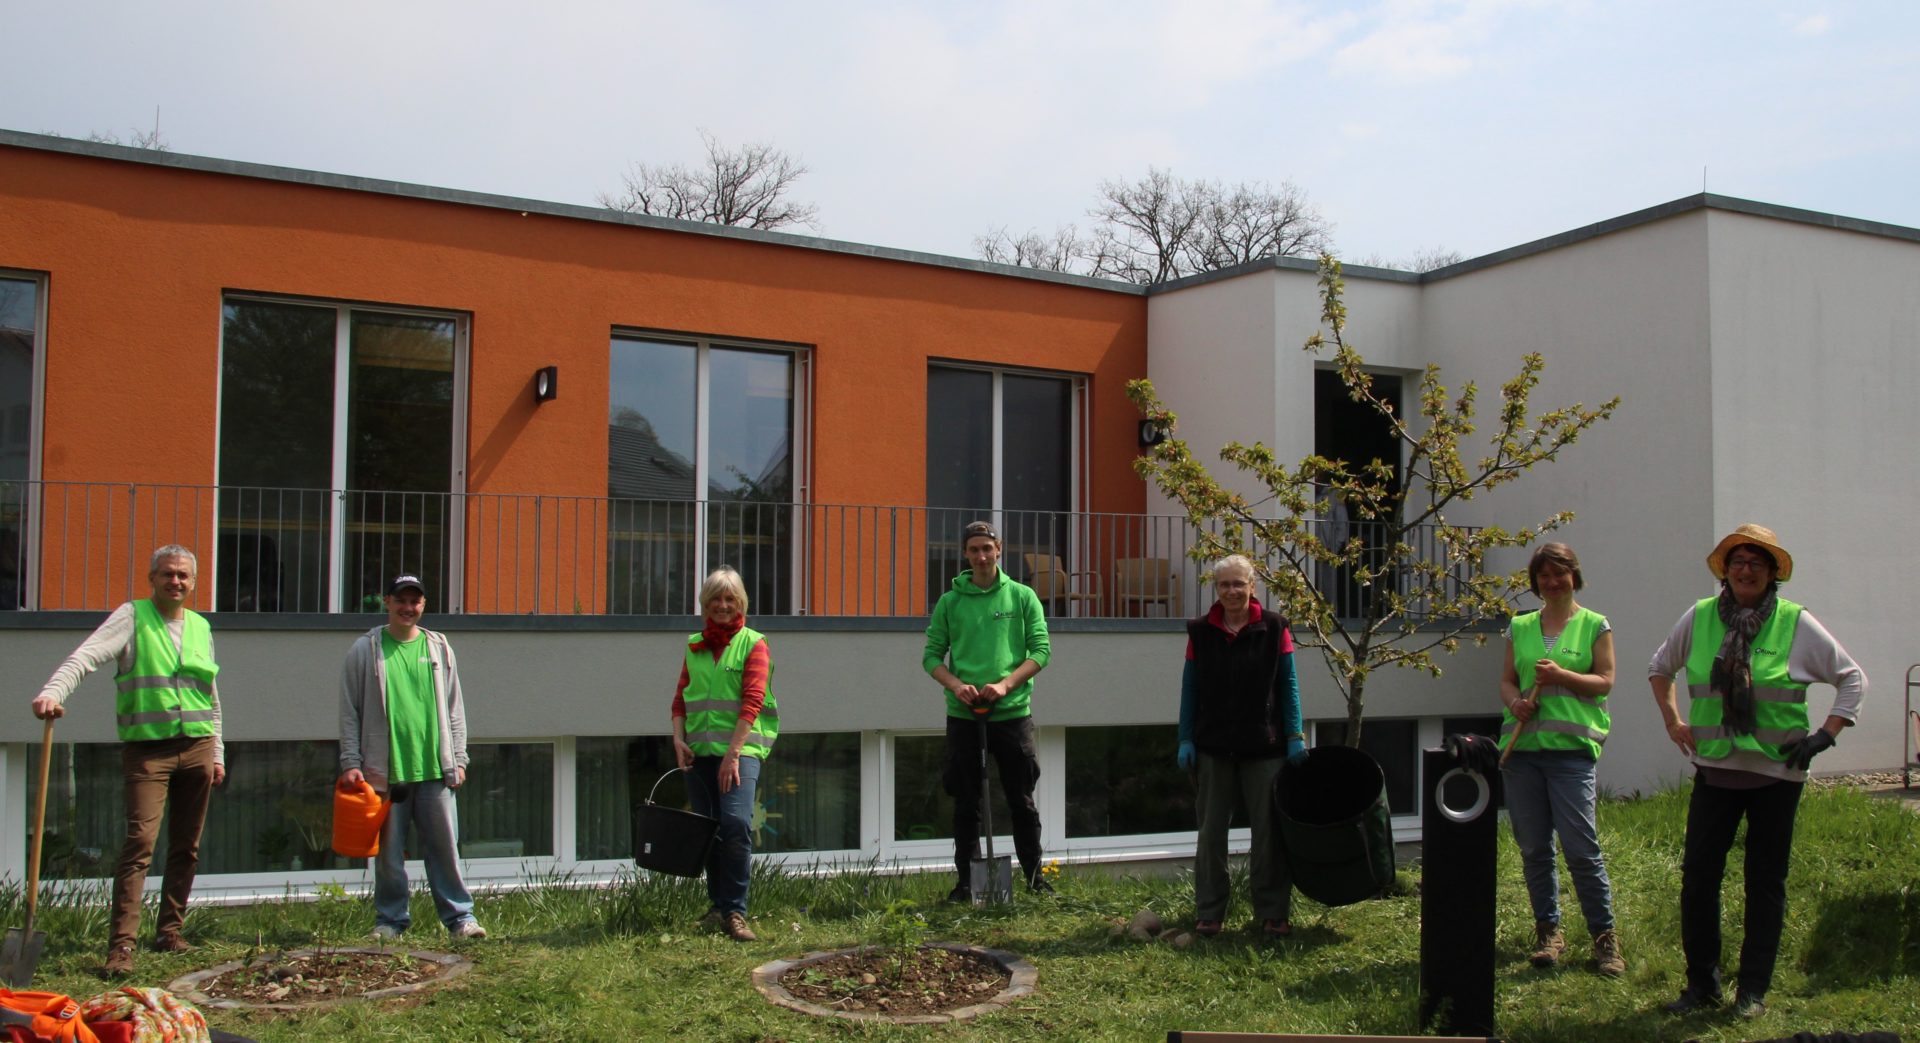 Insektenfreundliche Umgestaltung des Altersheims „Don Bosco“ in Konstanz durch den BUND-Konstanz